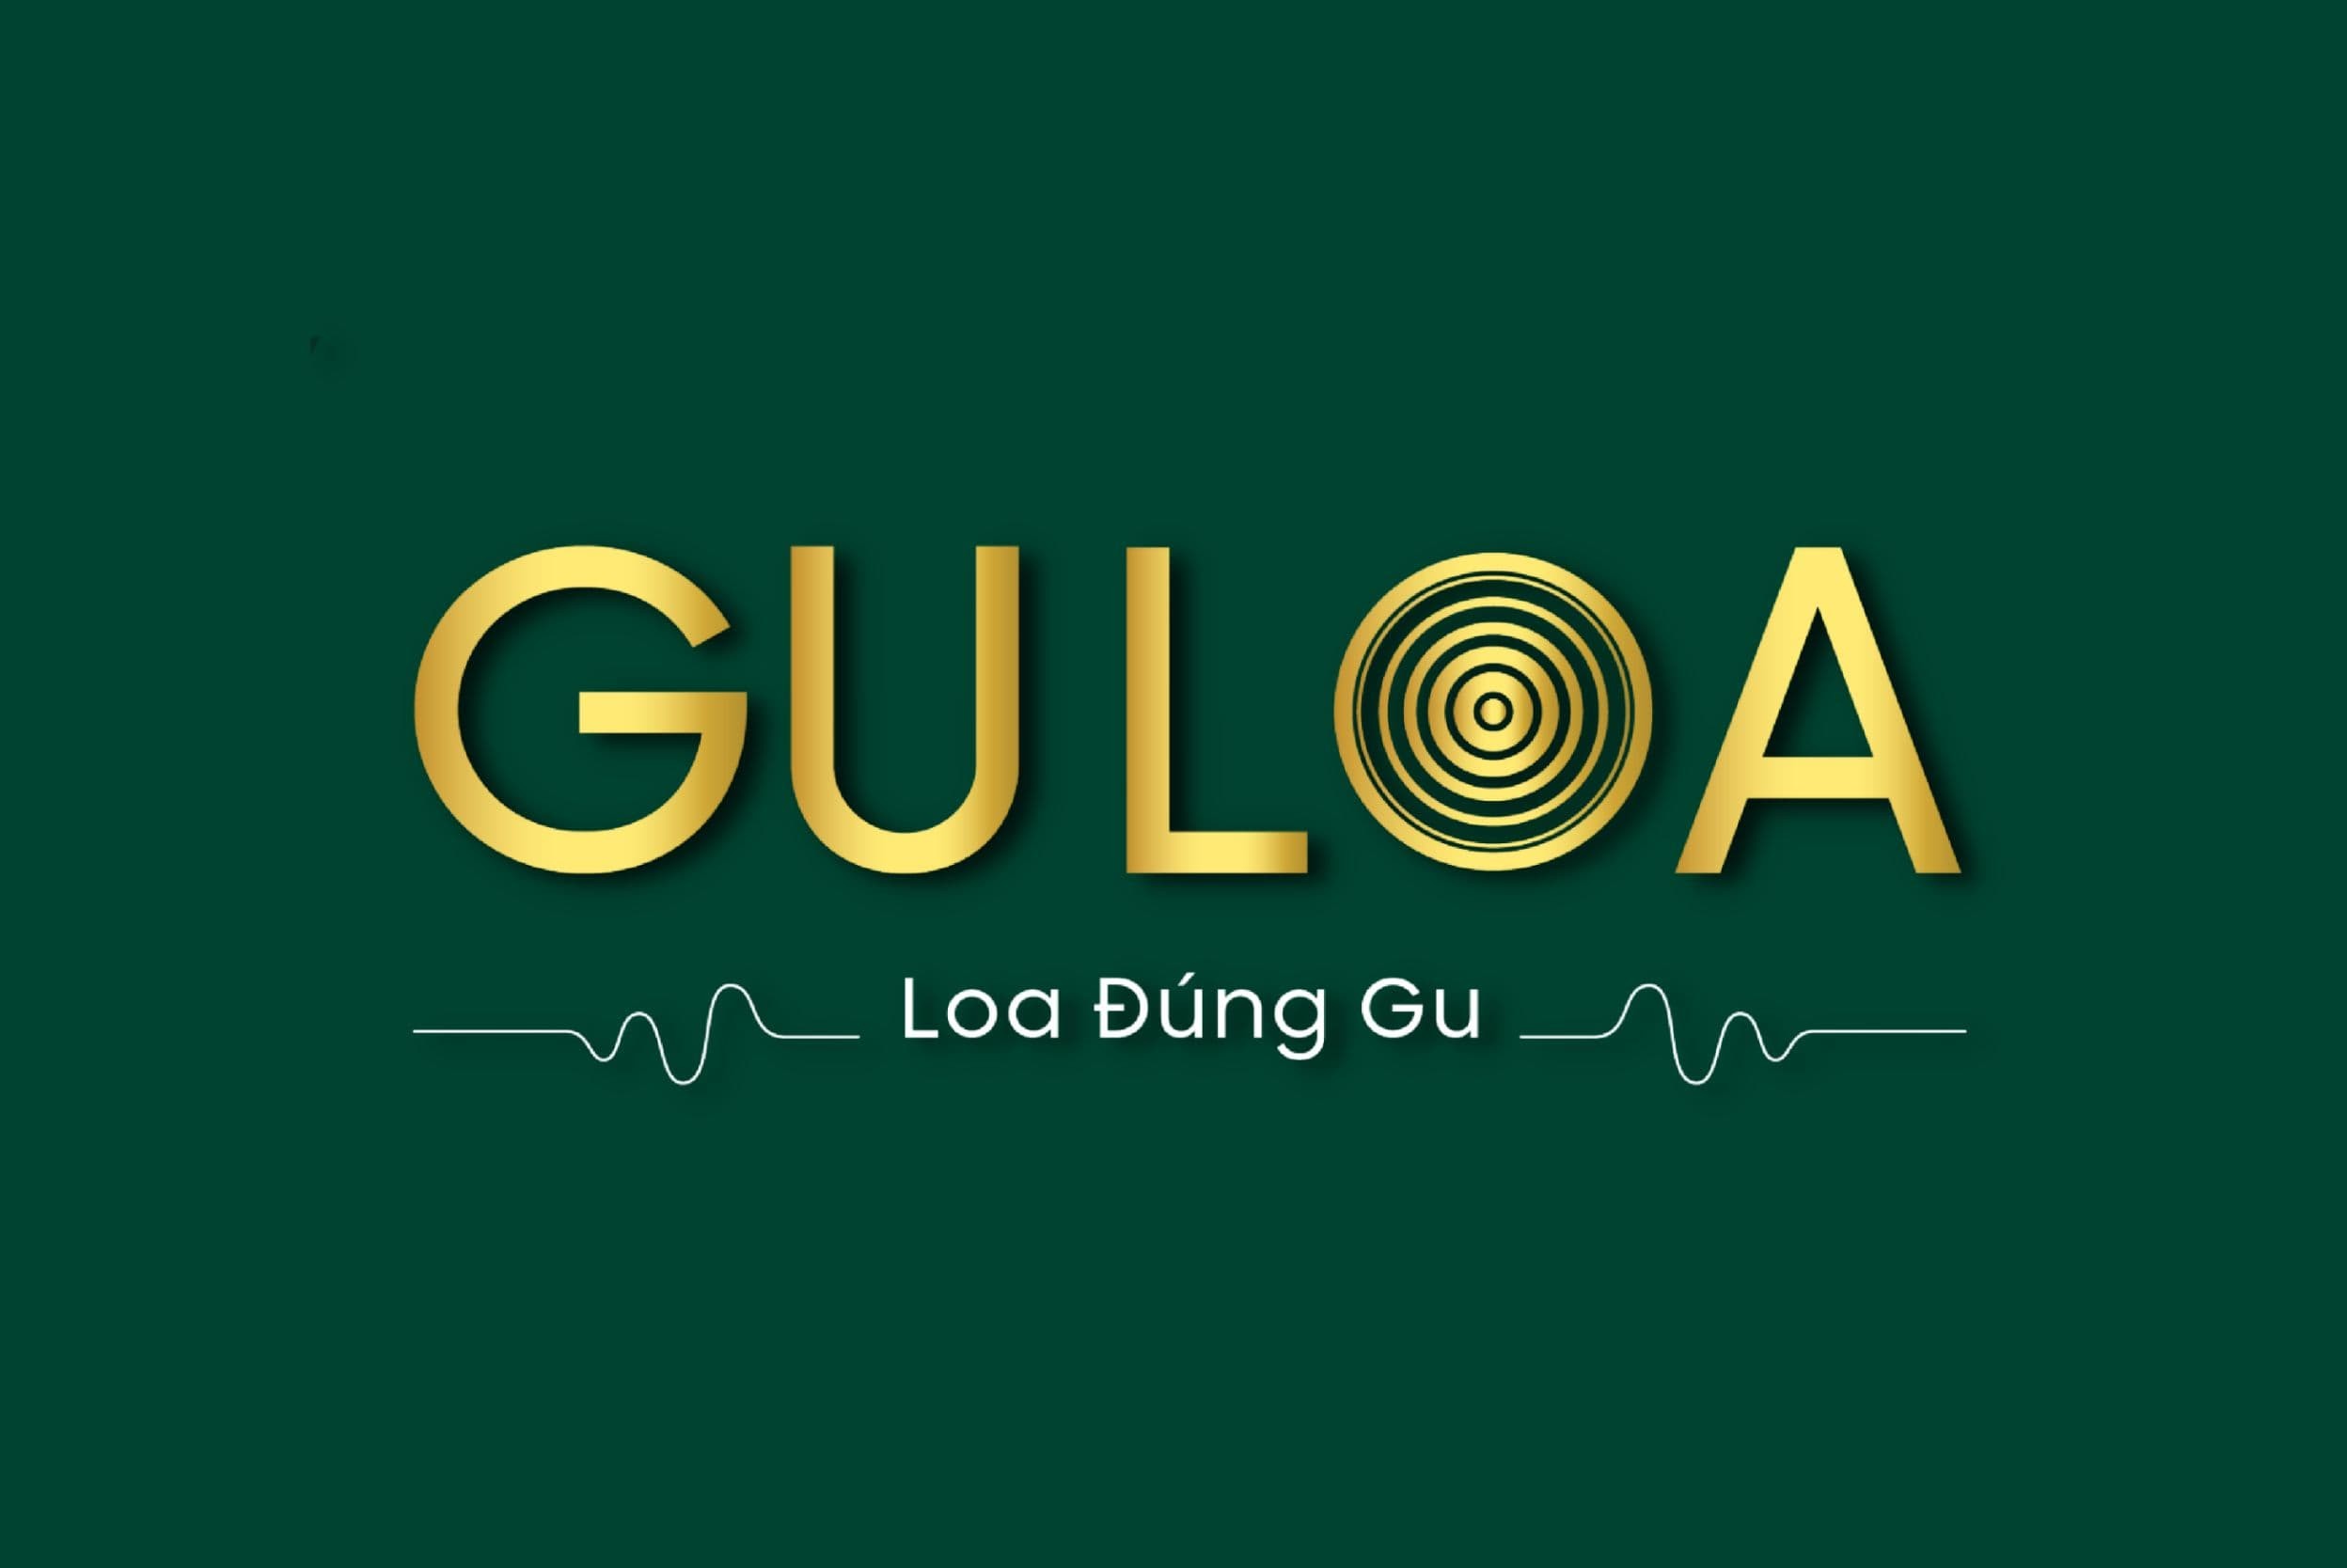 guloa-logo.jpg